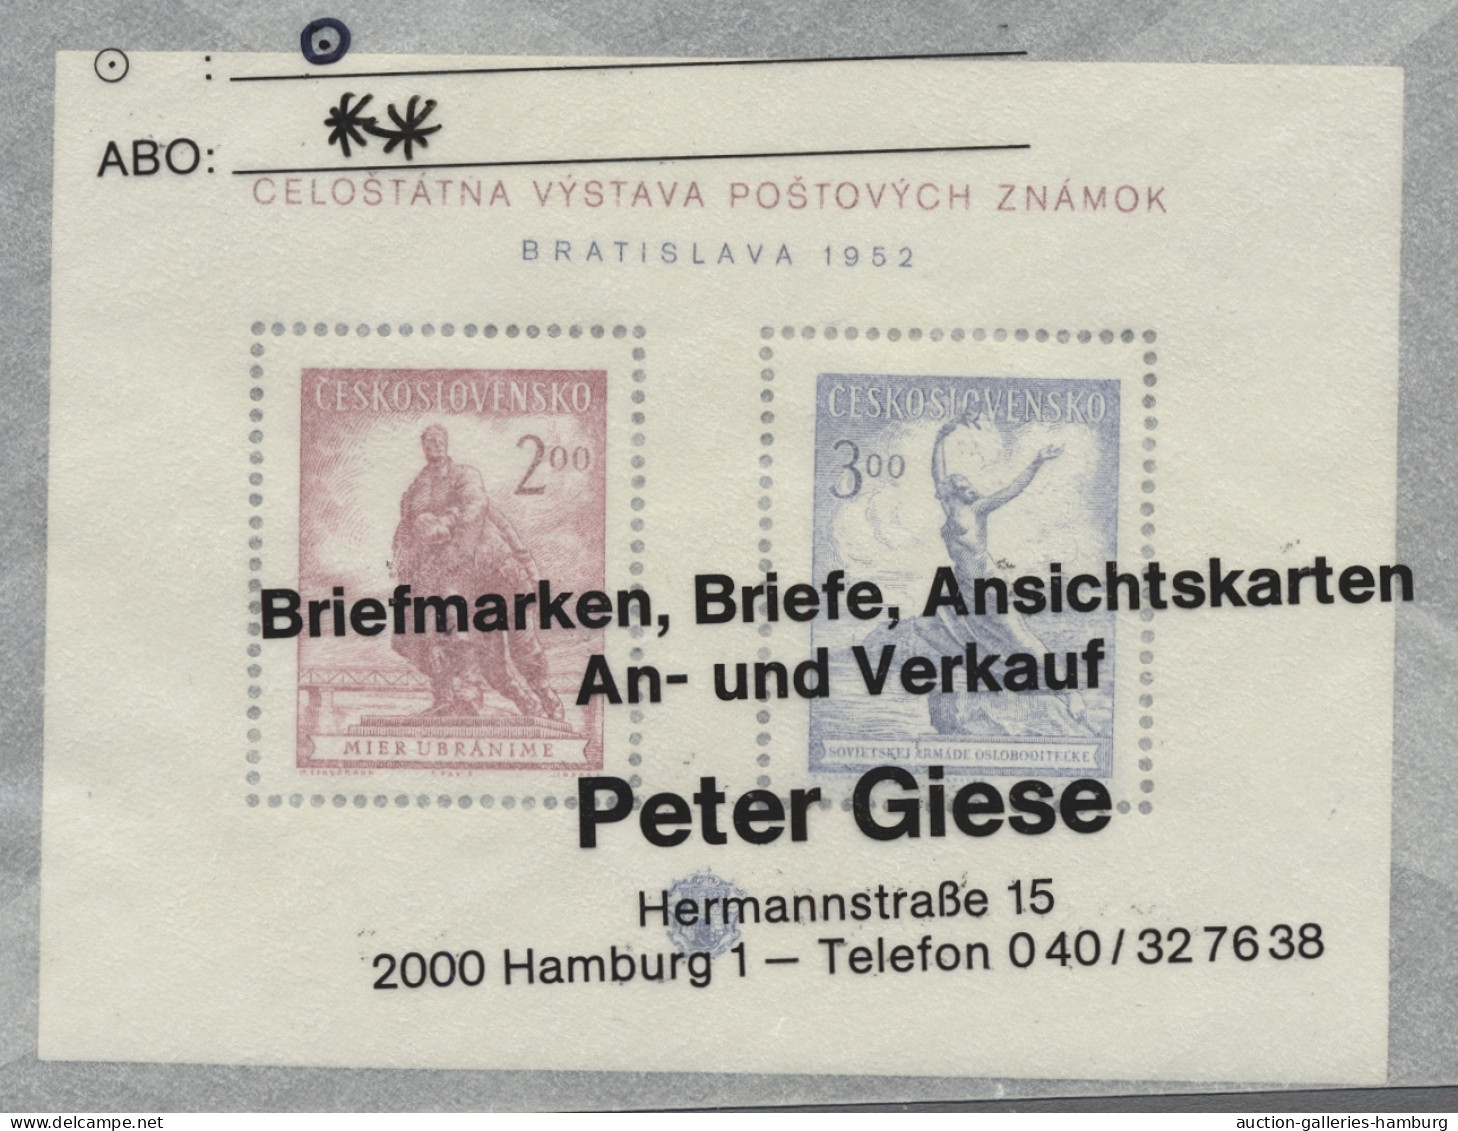 Czechoslowakia: 1918-1987, zwei Händlerlagerbucher in Ringbindern, sehr dicht ge